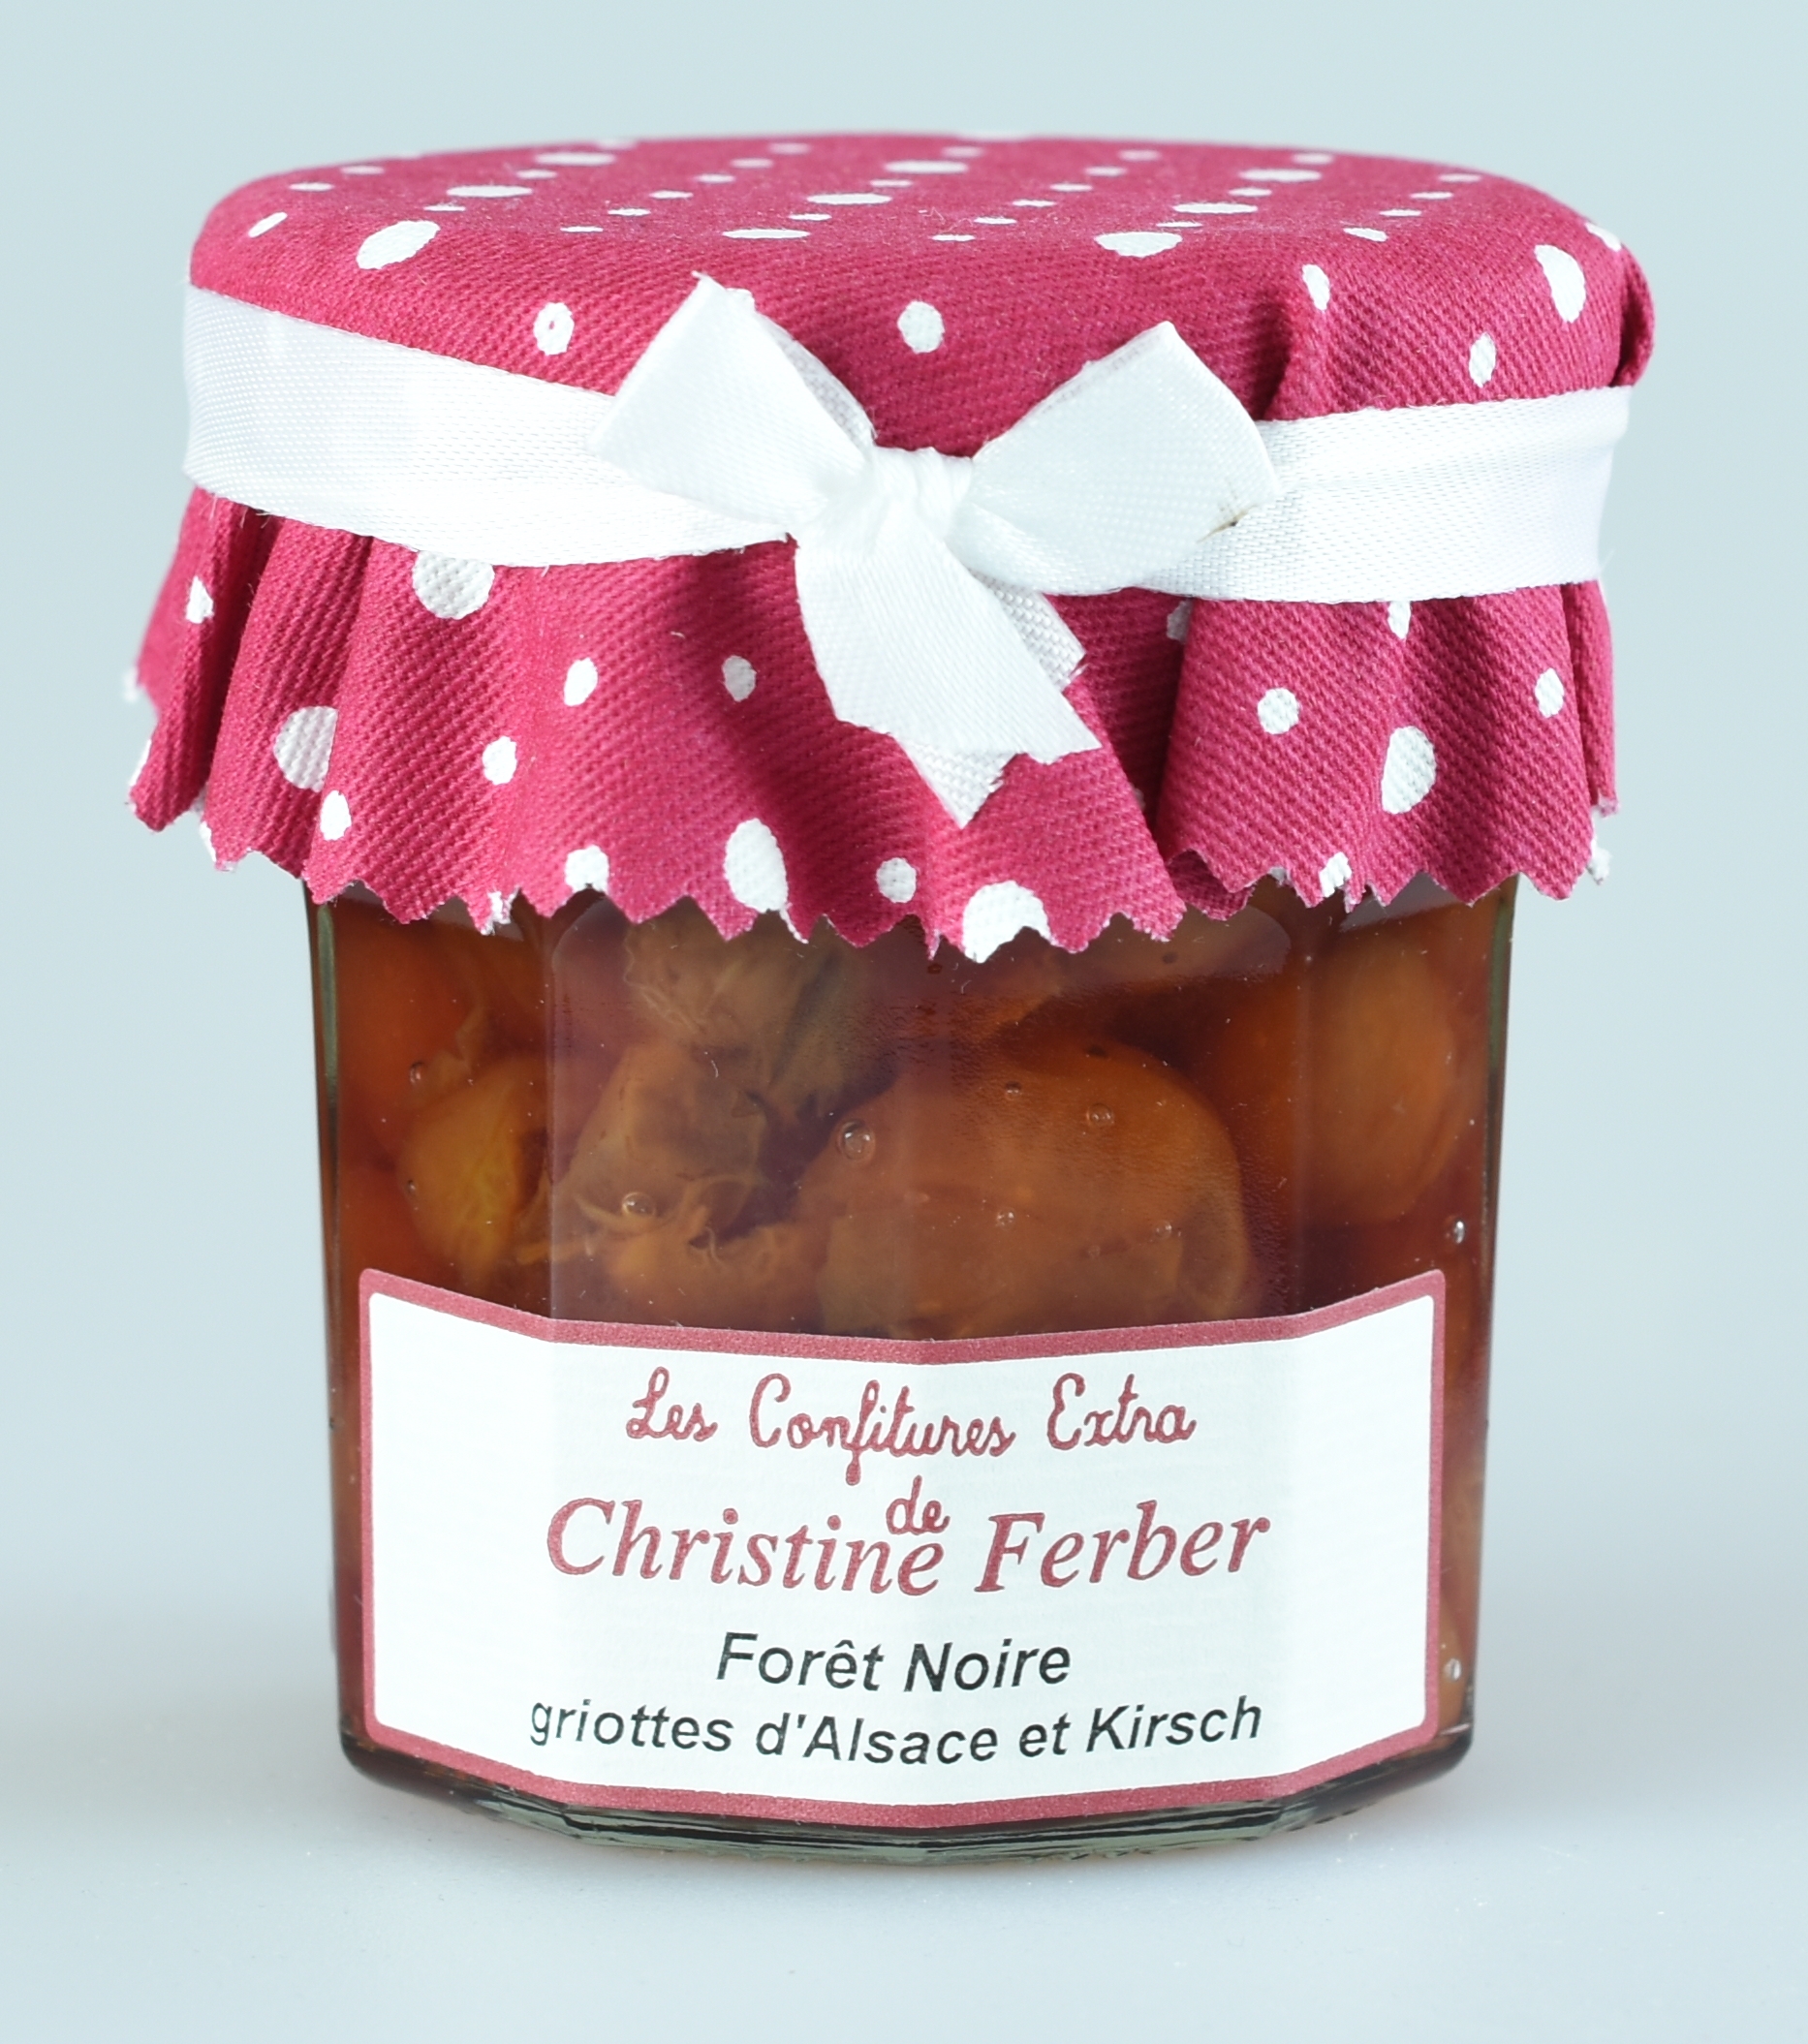 Sauerkirschen mit Kirschwassser, Confiture extra, Fôret-Noire, Christine Ferber 0,22 kg